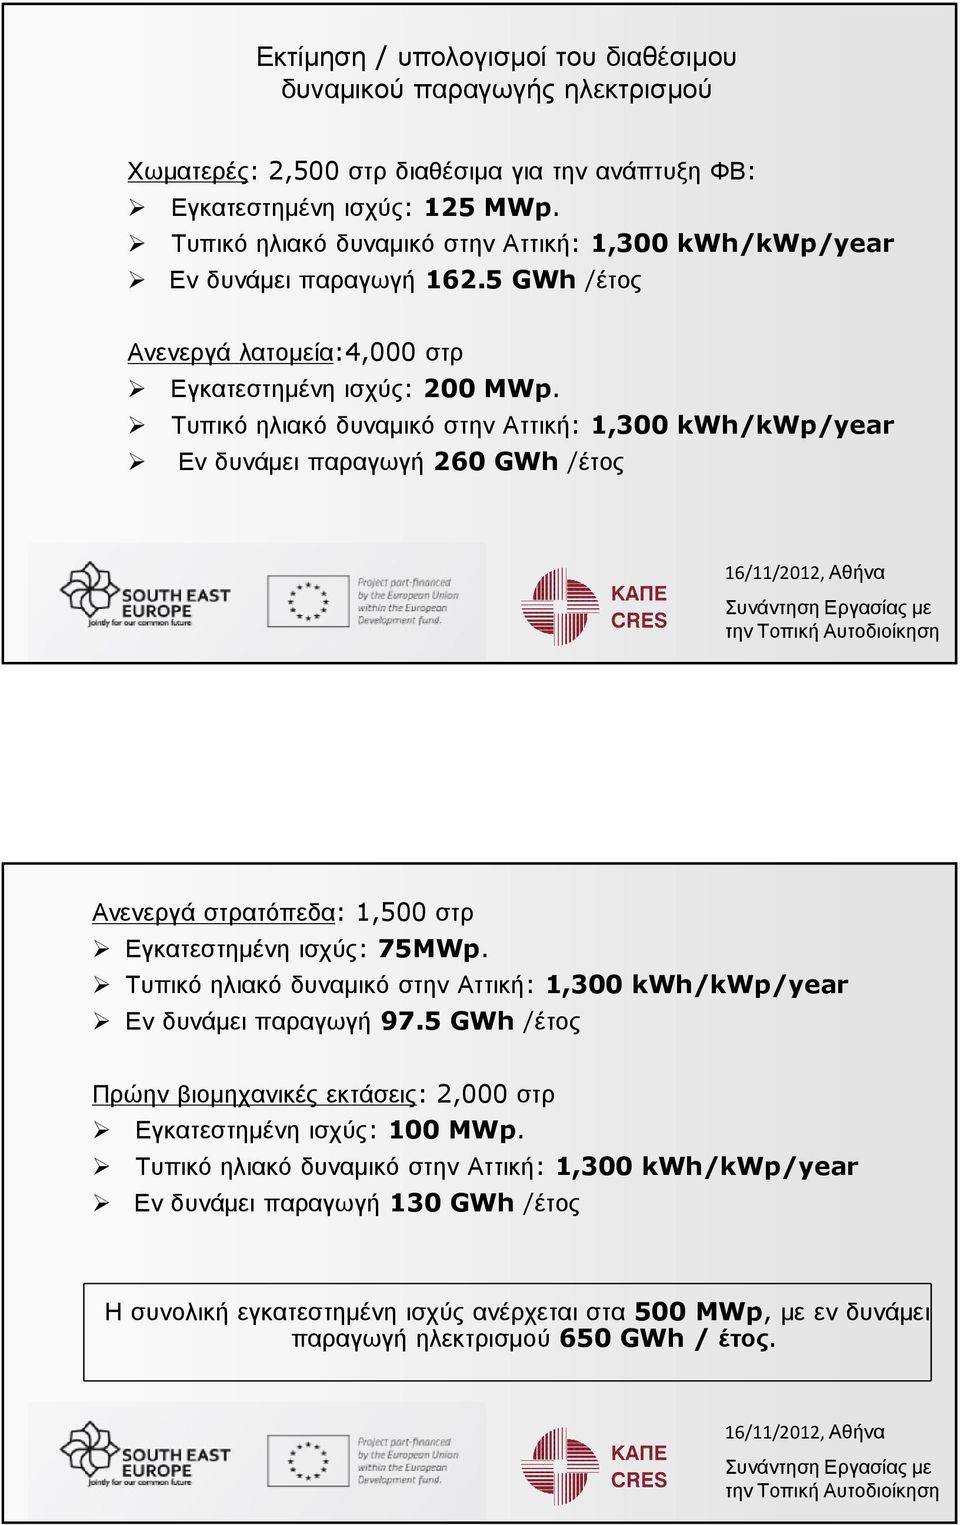 Τυπικό ηλιακό δυναµικό στην Αττική: 1,300 kwh/kwp/year Εν δυνάµει παραγωγή 260 GWh /έτος Ανενεργάστρατόπεδα: 1,500στρ Εγκατεστηµένηισχύς: 75MWp.